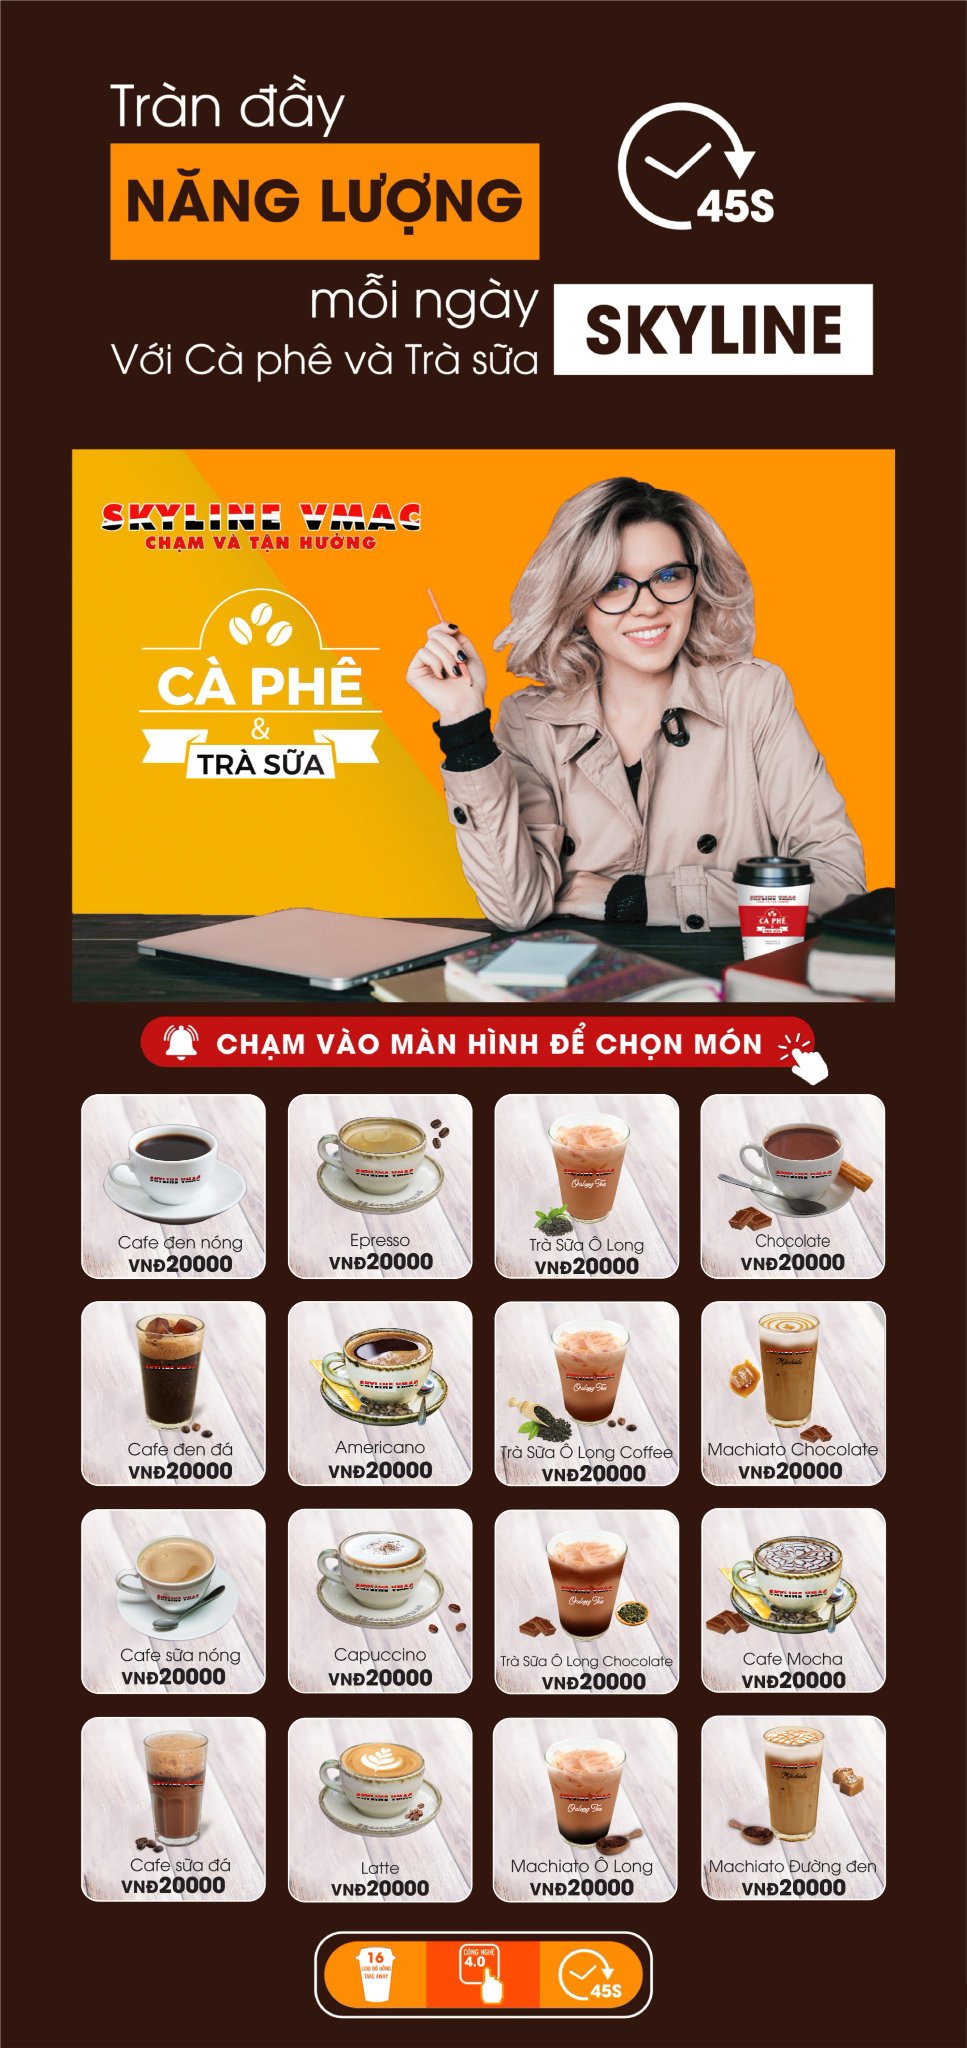 Máy pha cà phê tự động Skyline VMAC lần đầu có mặt tại Hồ Chí Minh